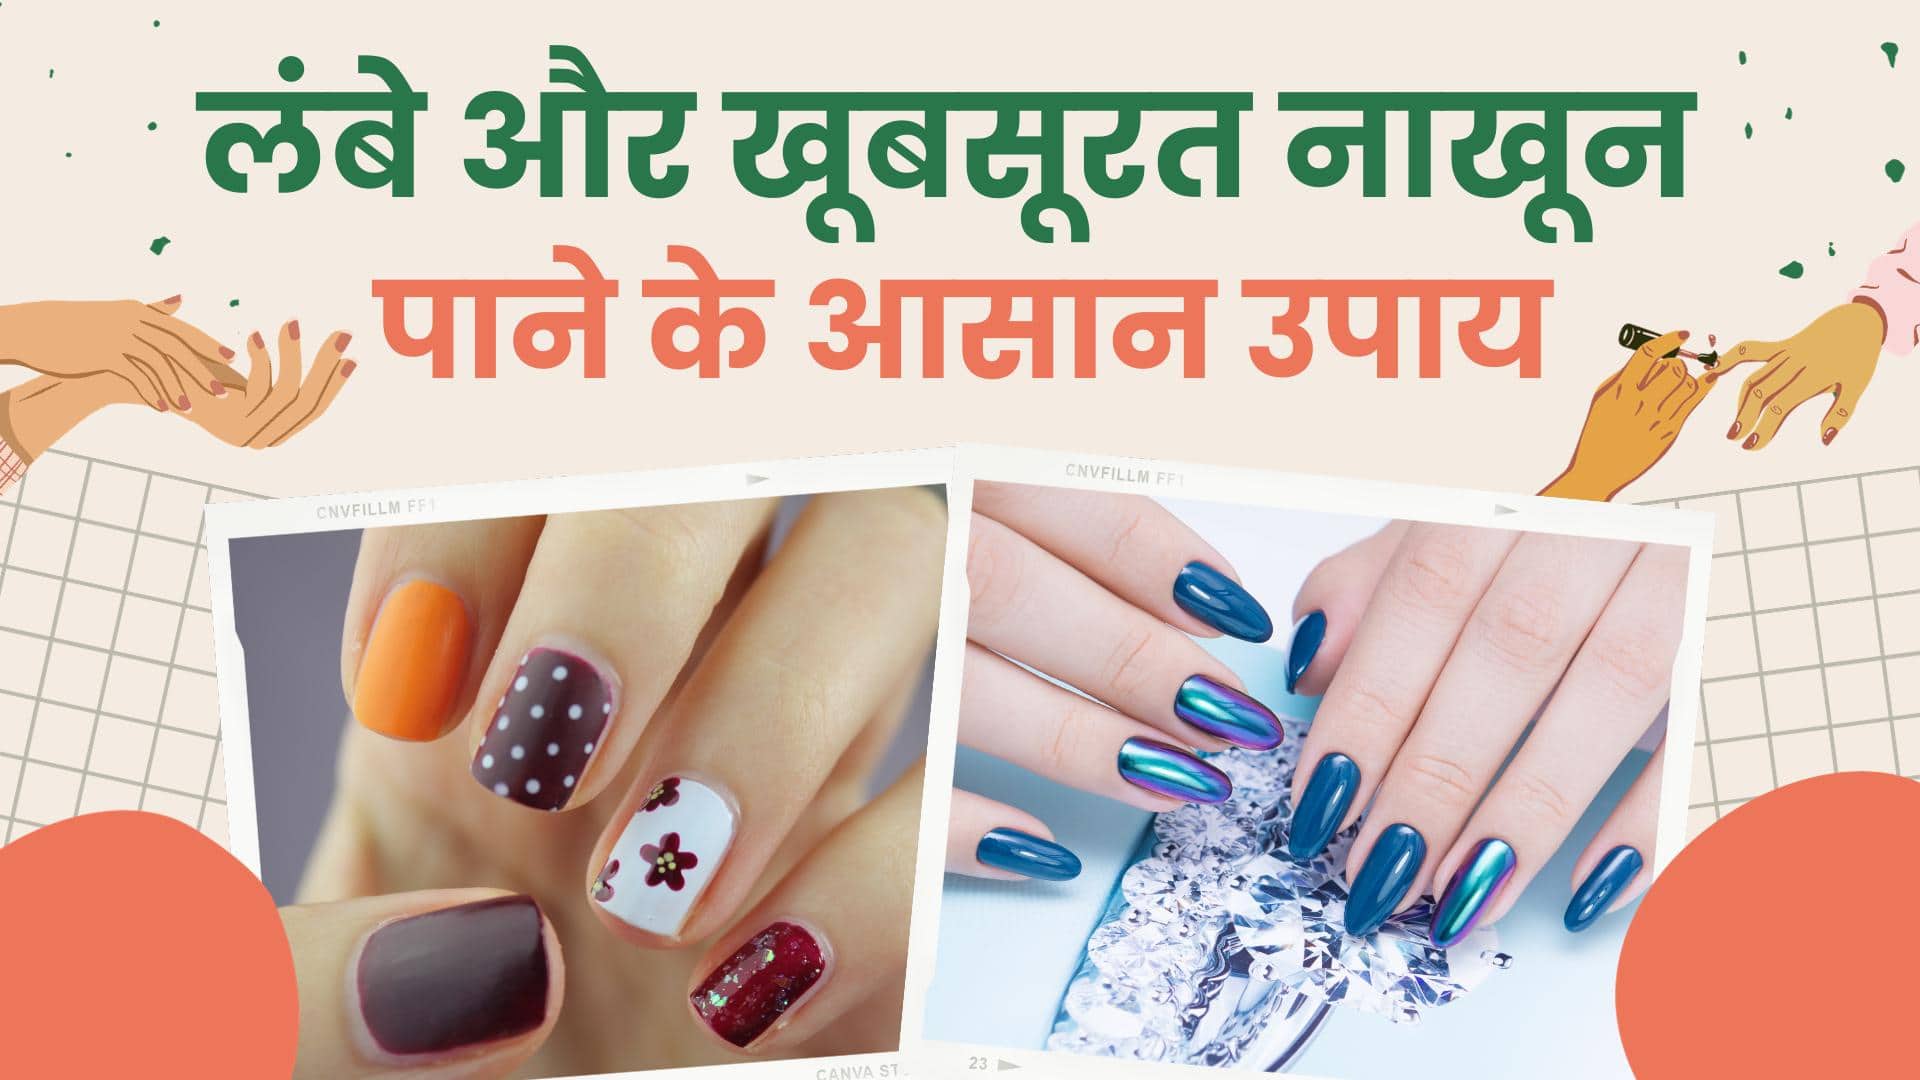 नेल पेंट से जुड़े इन हैक्स की मदद से करें अपने नाखूनों का कायाकल्प - know  about some nail paint hacks in hindi